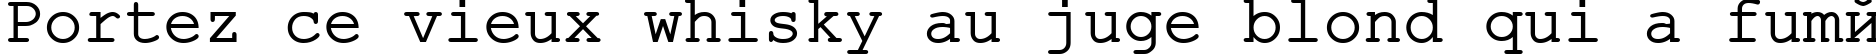 Пример написания шрифтом ER Kurier 1251 текста на французском